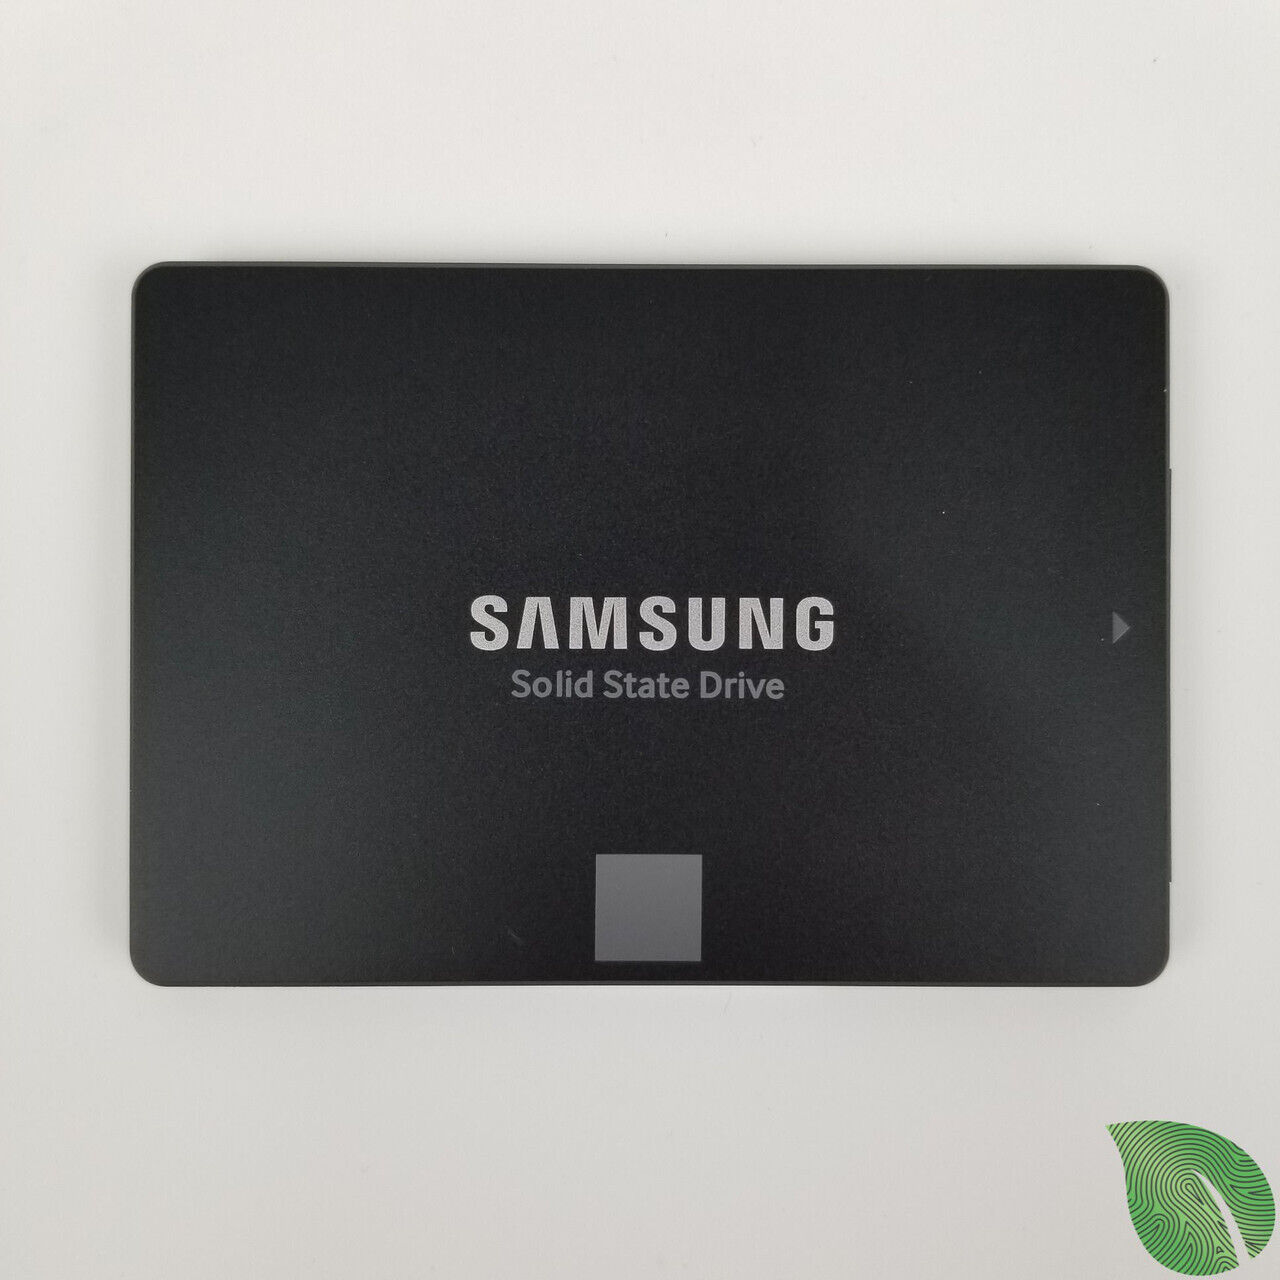 Samsung 850 Evo MZ-75E250 250GB SSD | Grade A